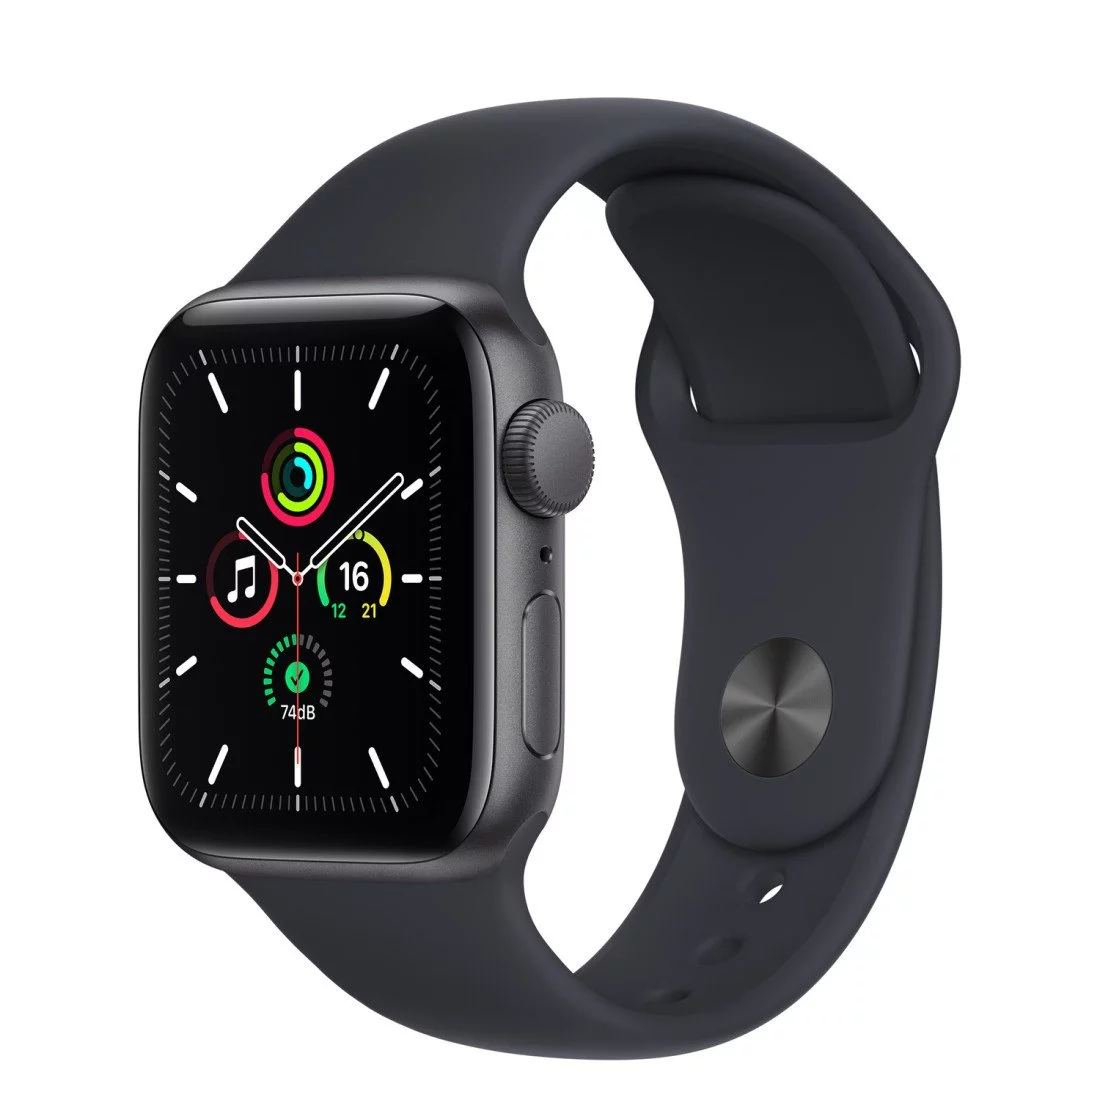 130 € de remise immédiate sur cette montre connectée Apple